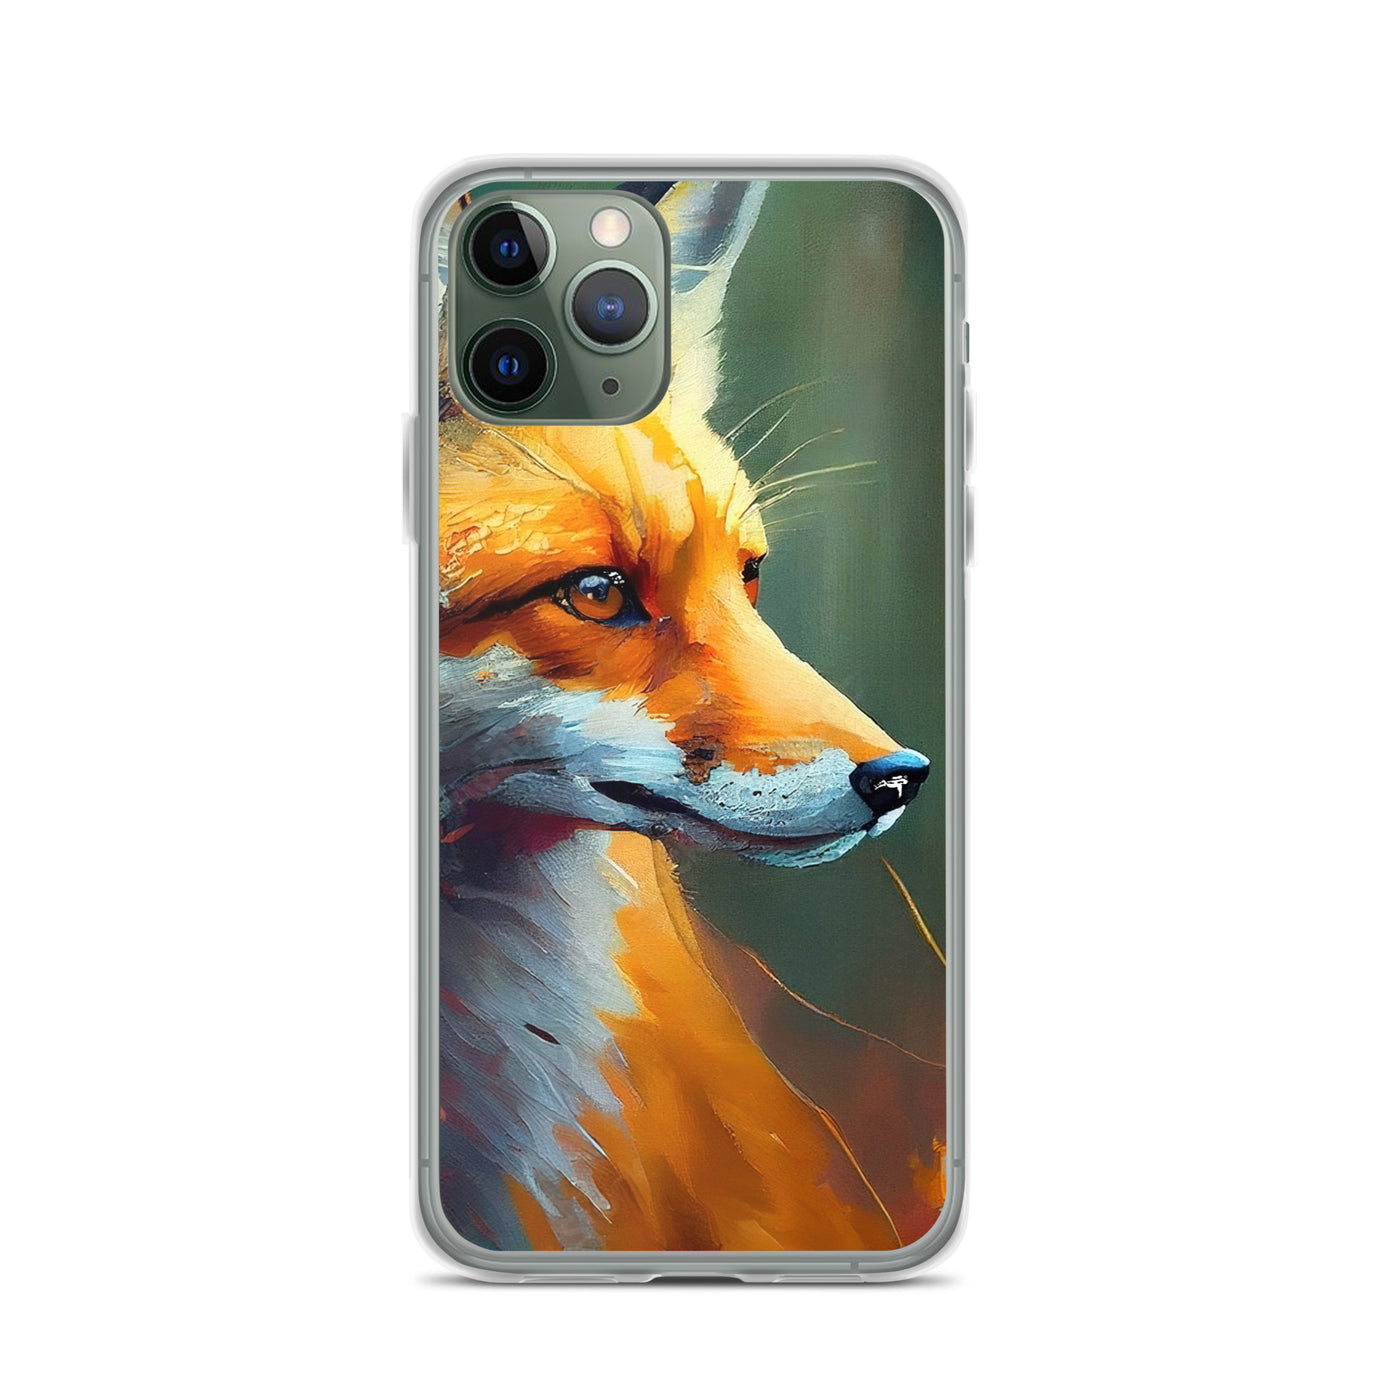 Fuchs - Ölmalerei - Schönes Kunstwerk - iPhone Schutzhülle (durchsichtig) camping xxx iPhone 11 Pro